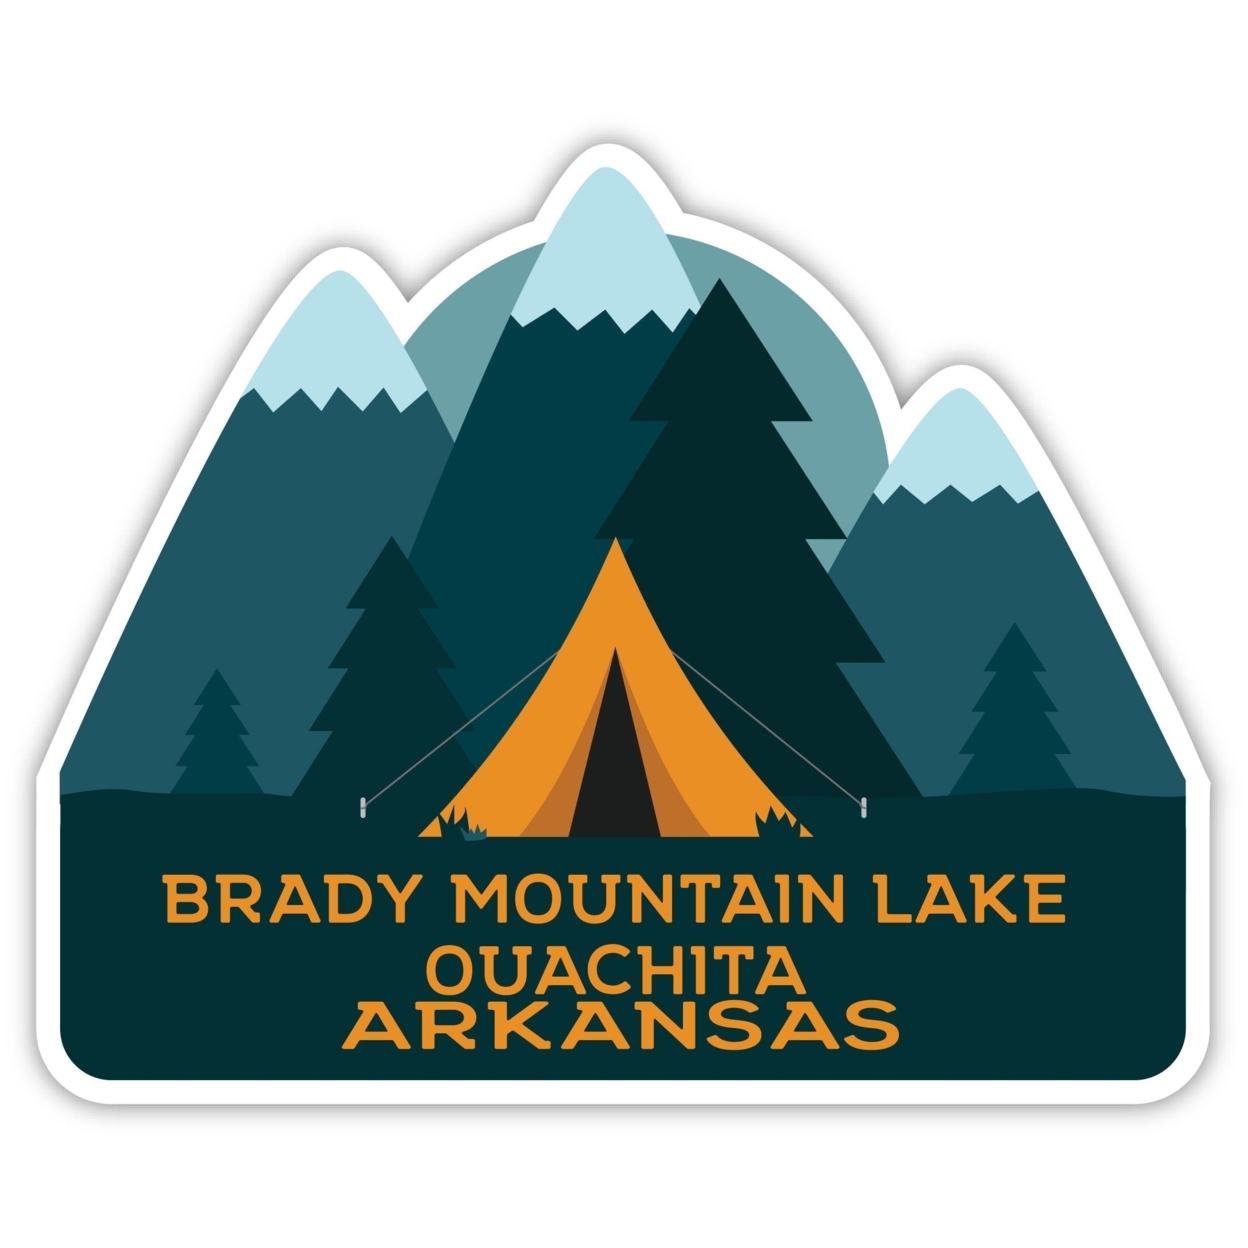 Brady Mountain Lake Ouachita Arkansas Souvenir Decorative Stickers (Choose Theme And Size) - 4-Pack, 12-Inch, Bear